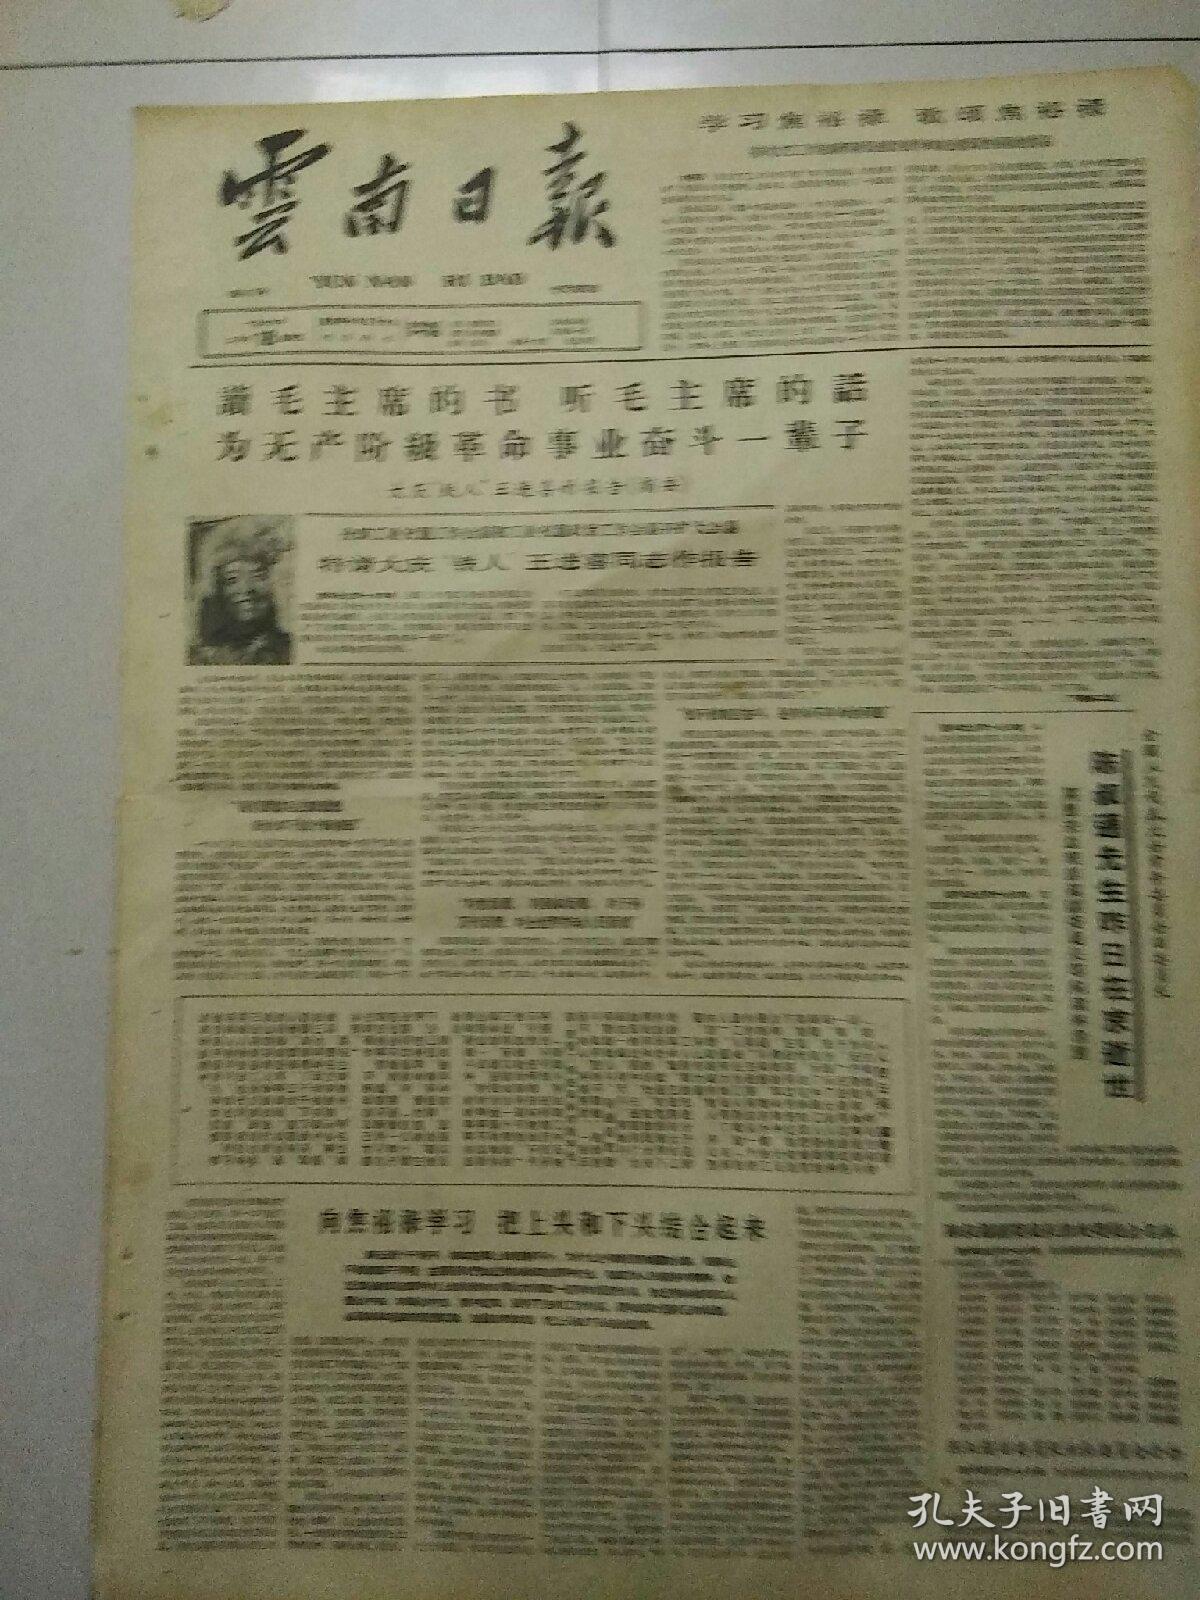 生日报云南日报1966年2月18日（4开四版）
陈叔通先生昨日在京逝世；
读毛主席的书，听毛主席的话；